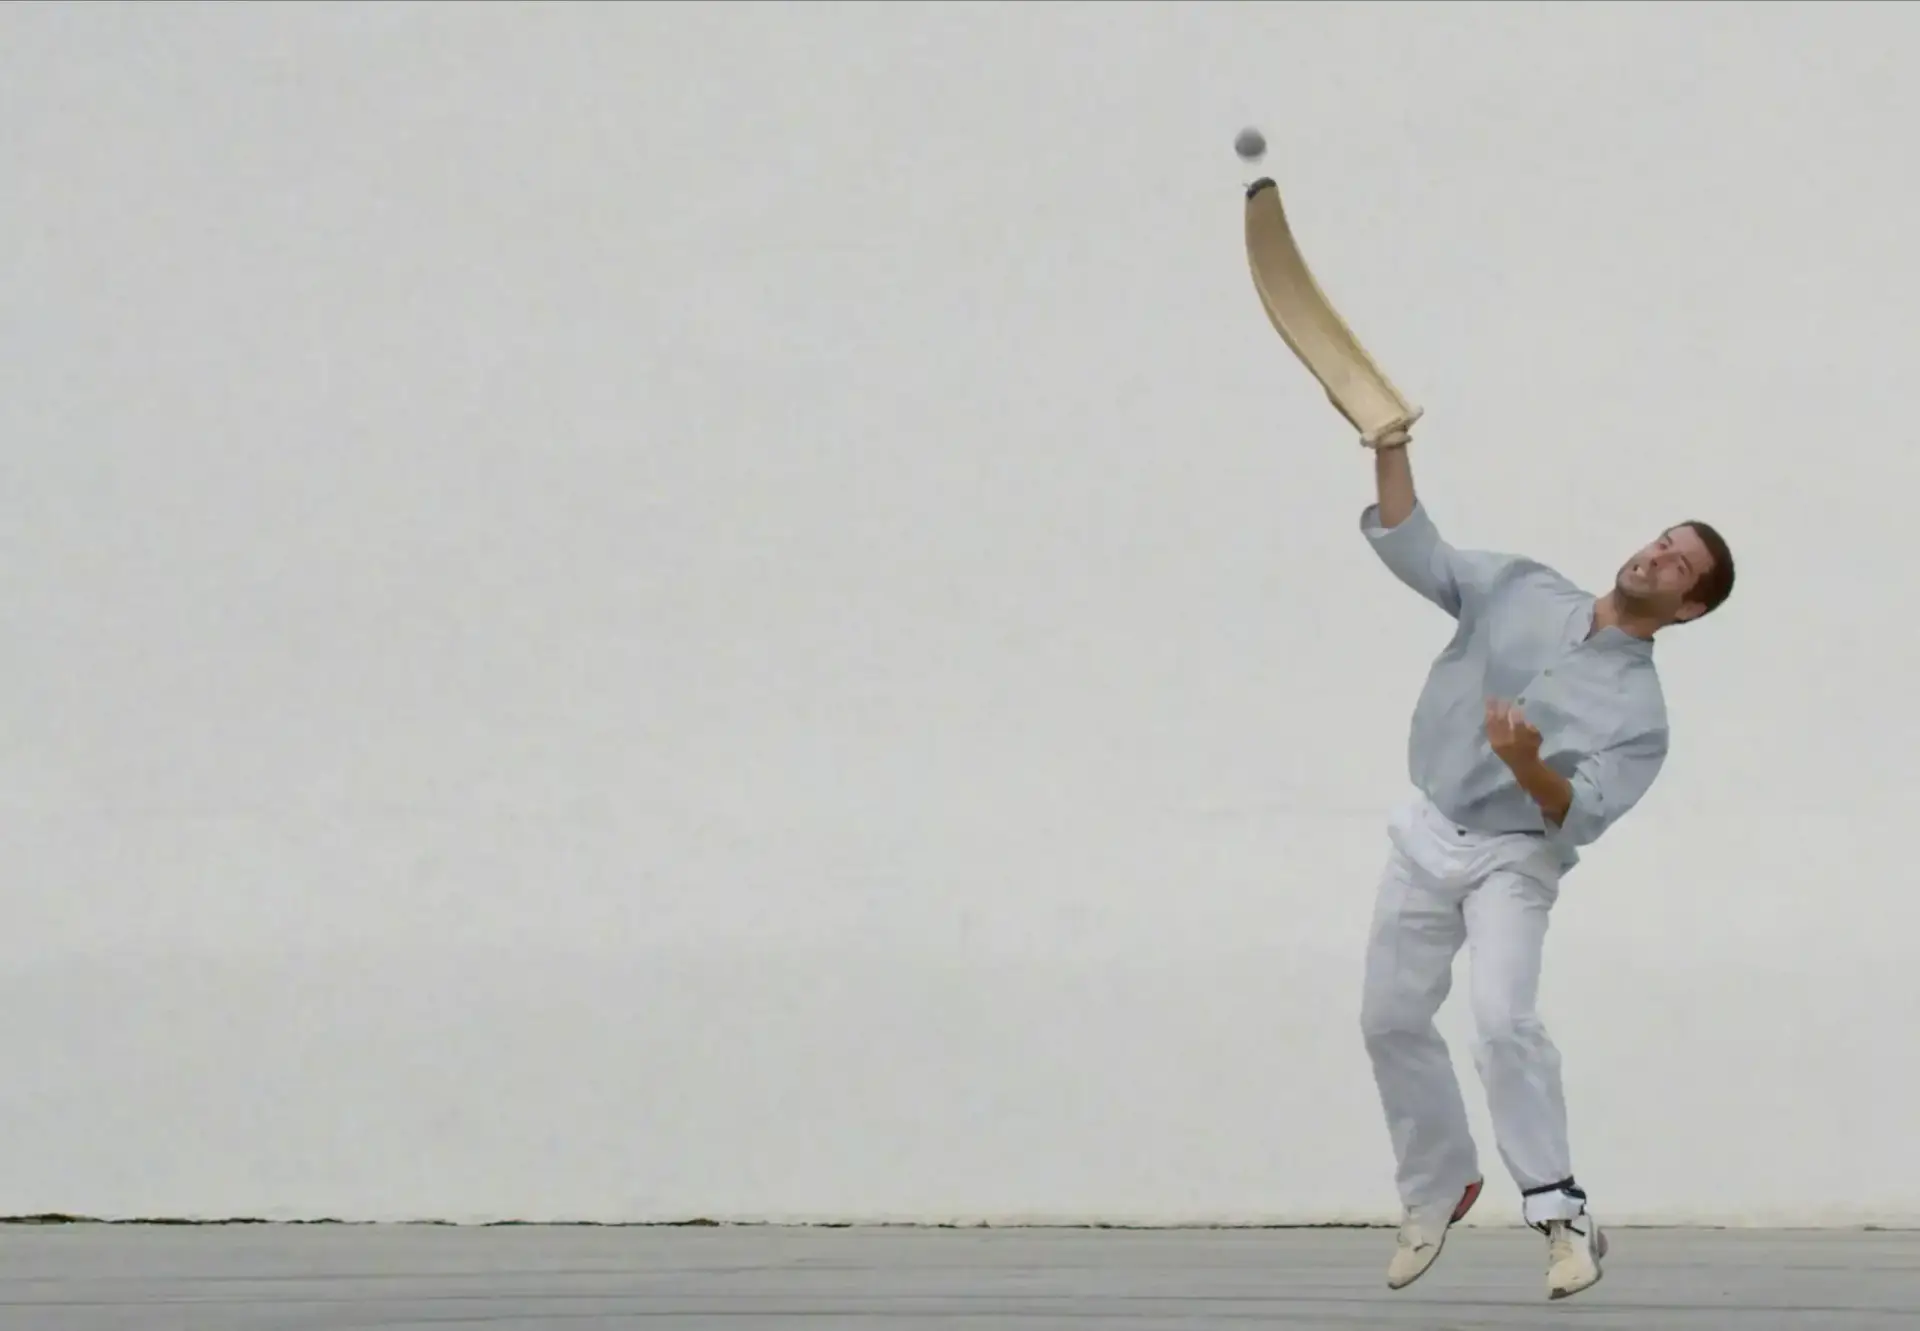 Joueur de pelote basque en action avec une cesta punta, frappant la balle contre un mur blanc.